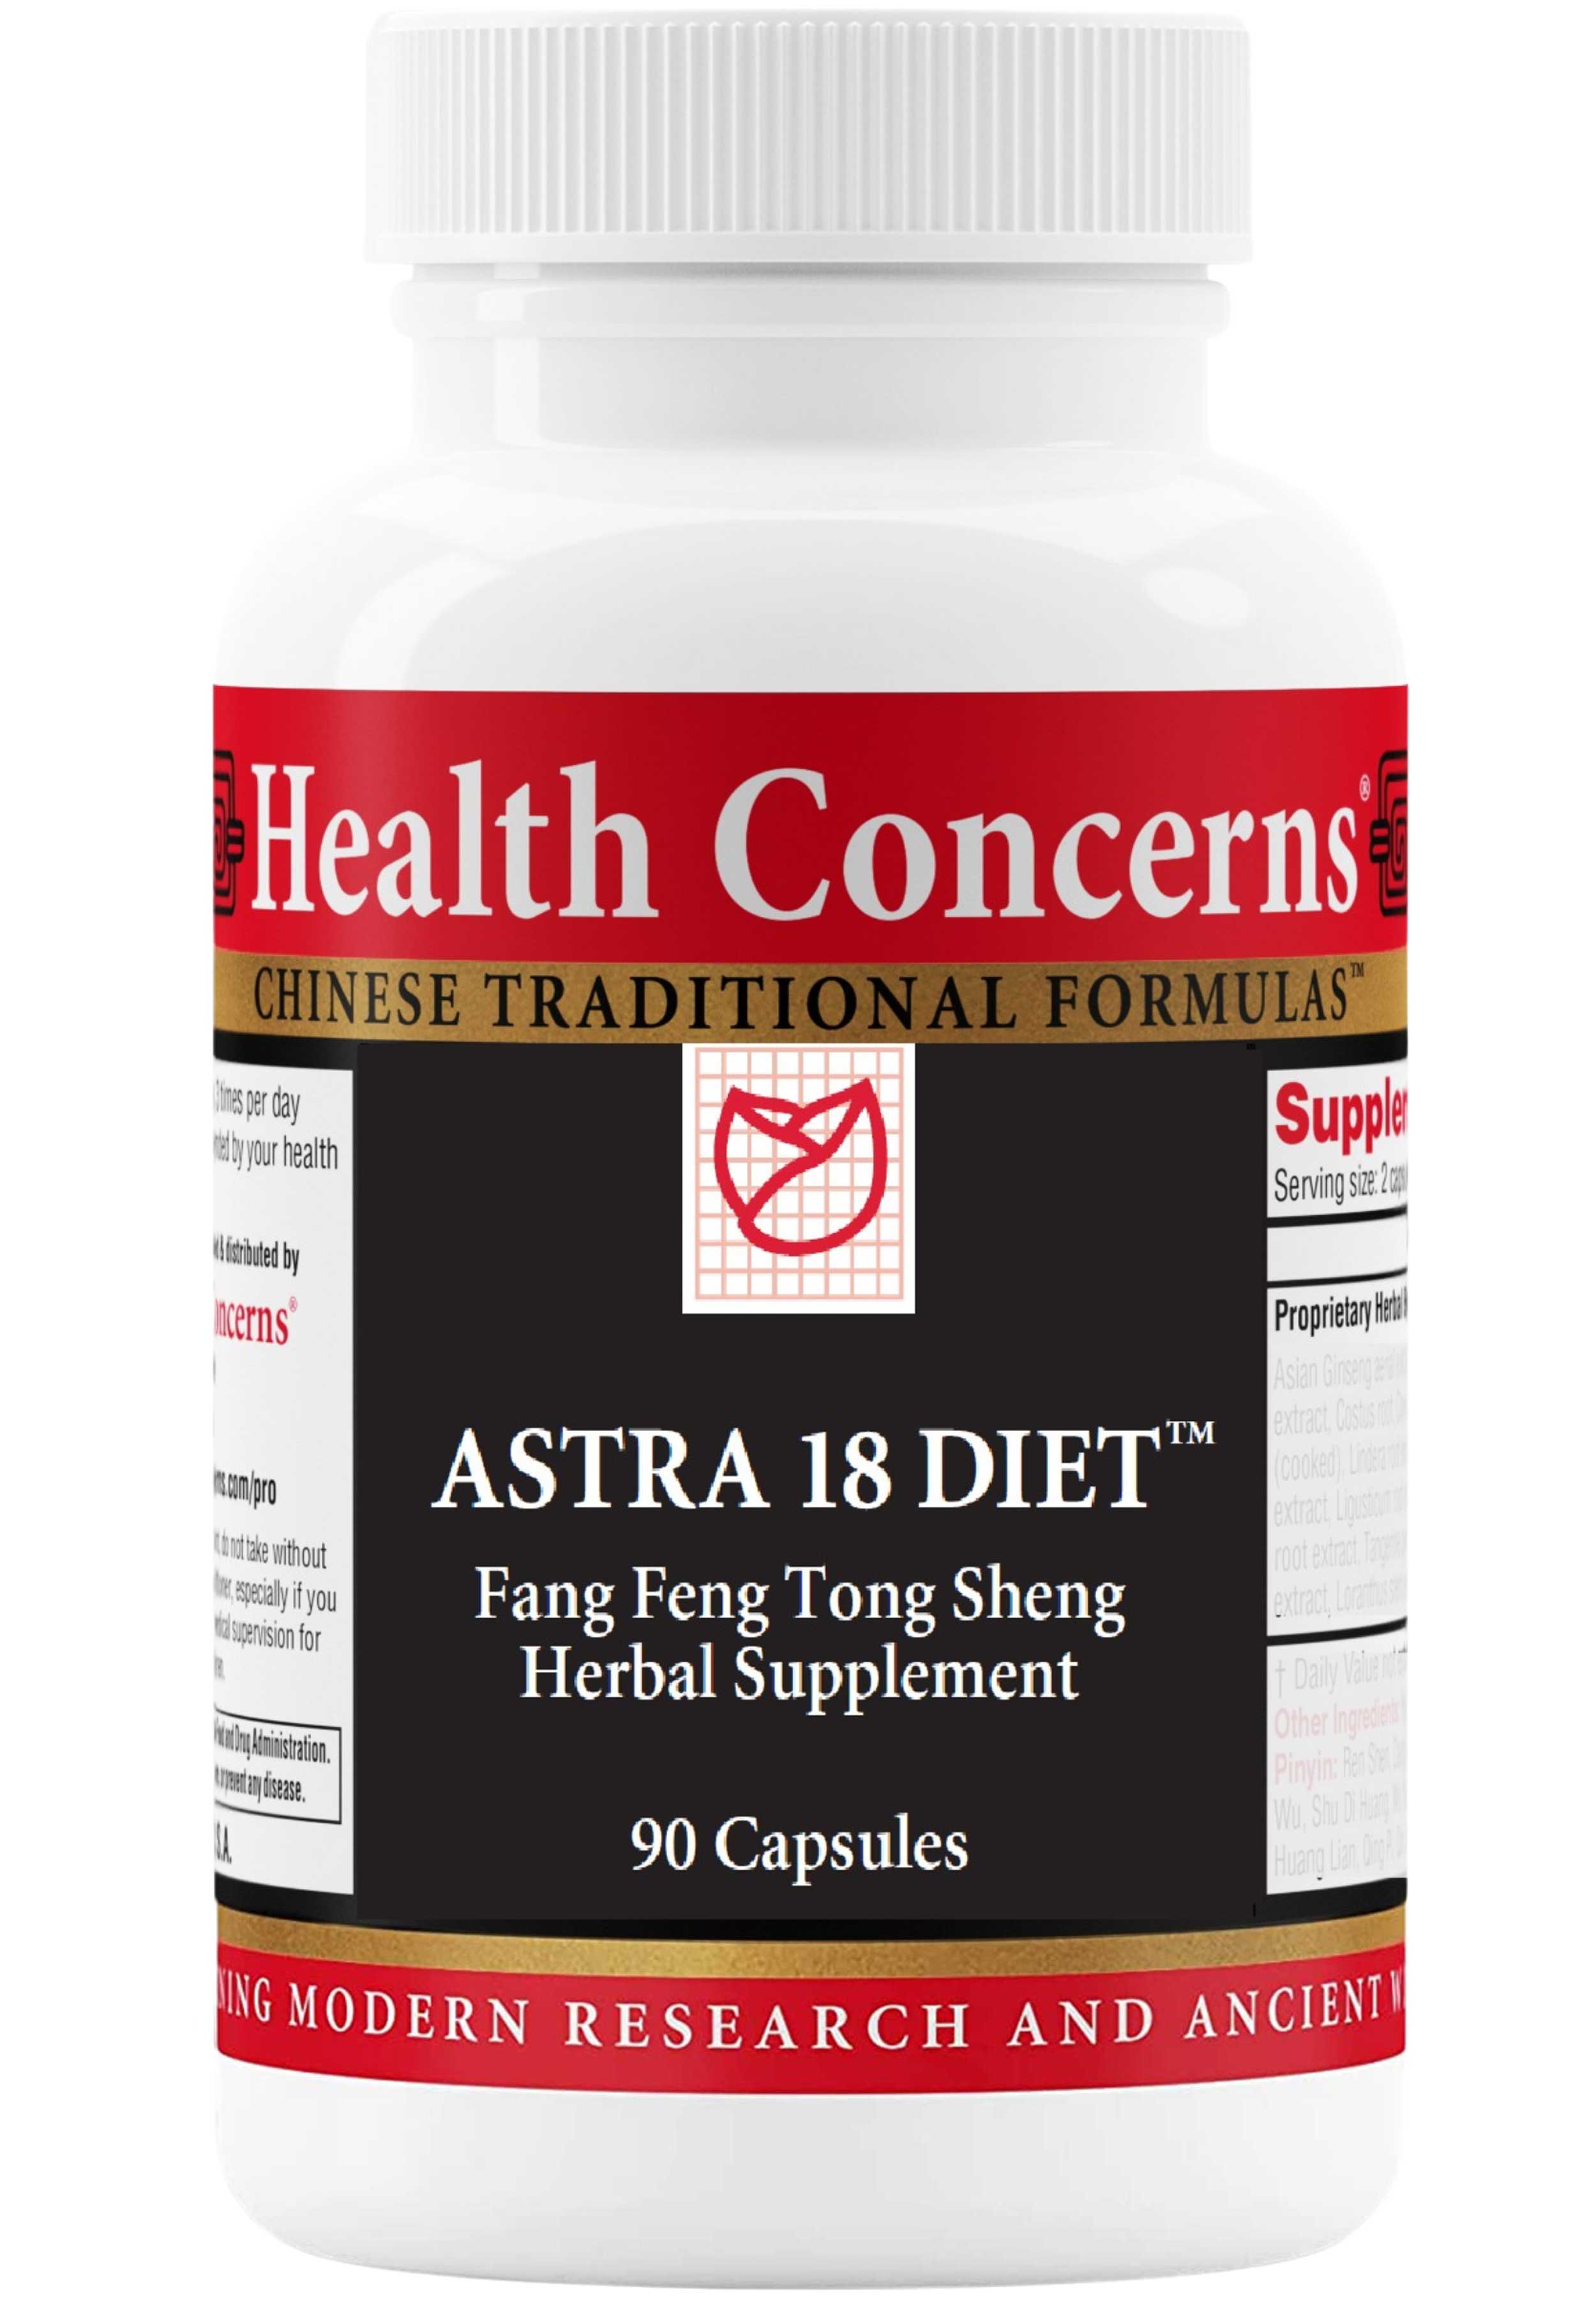 Health Concerns Astra 18 Diet